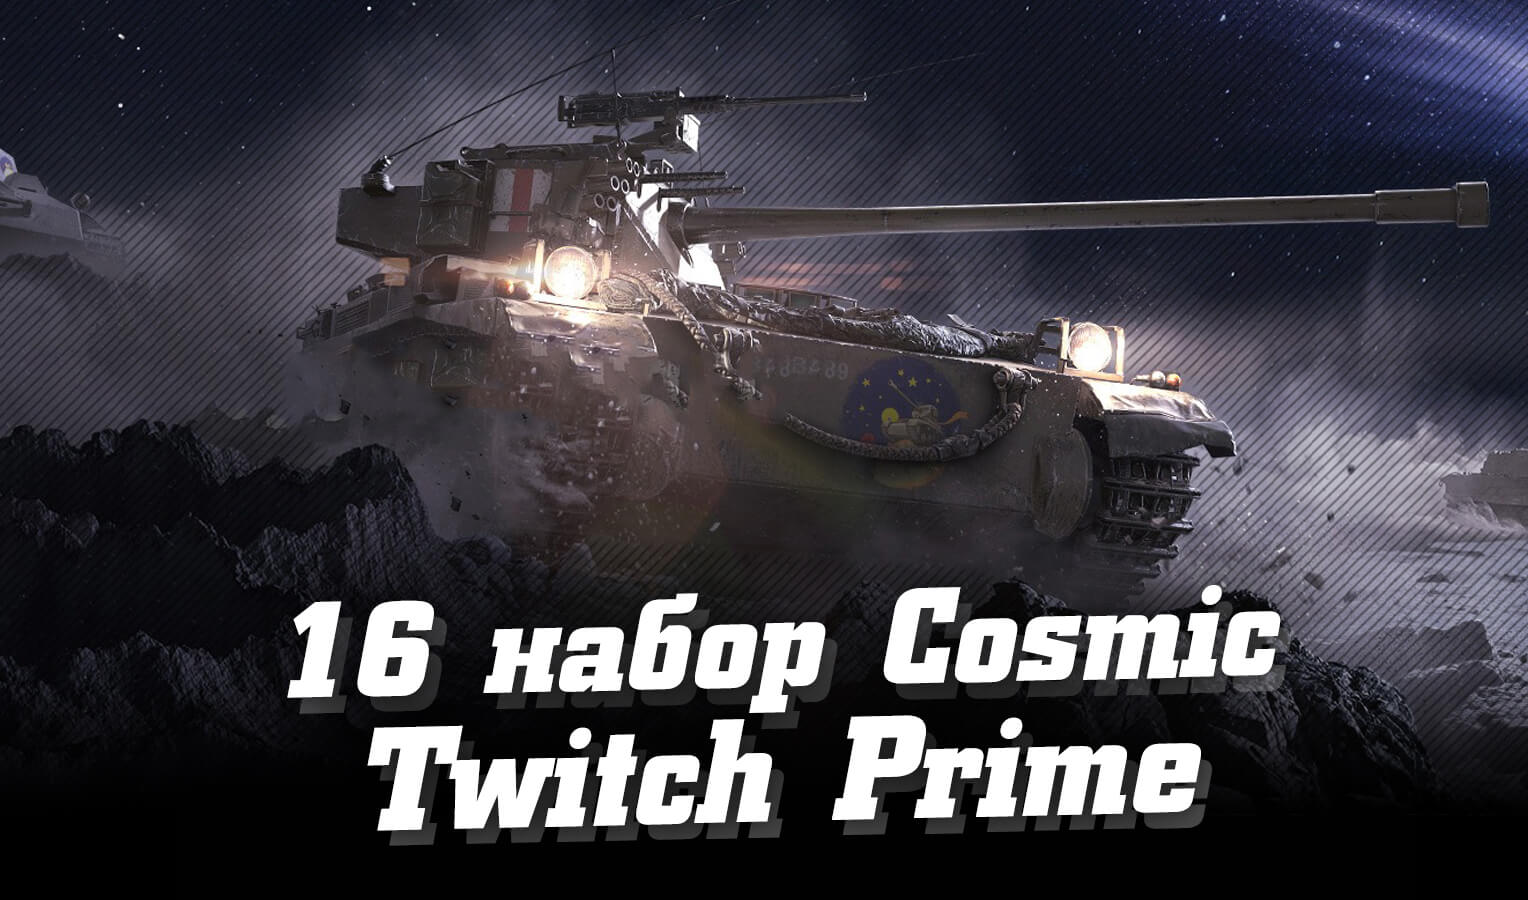 Как получить 16 набор Twitch Prime WoT – Cosmic (Космос), апрель 2020